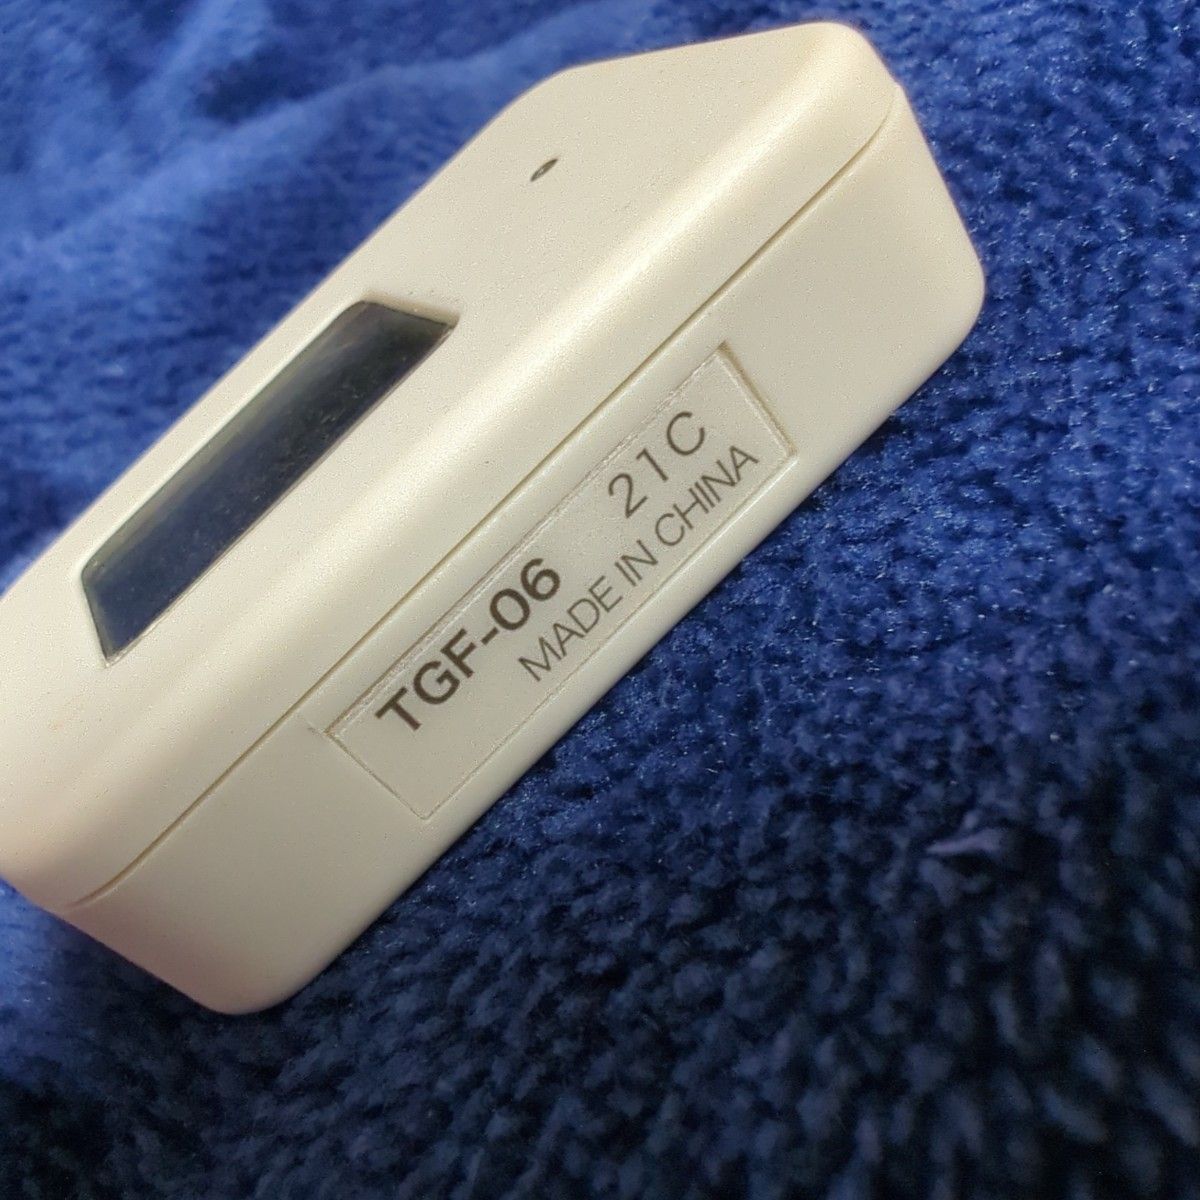 無印良品 タグツール 温湿度計 シリコンケース付き TGF-06 廃盤品 美品 熱中症対策